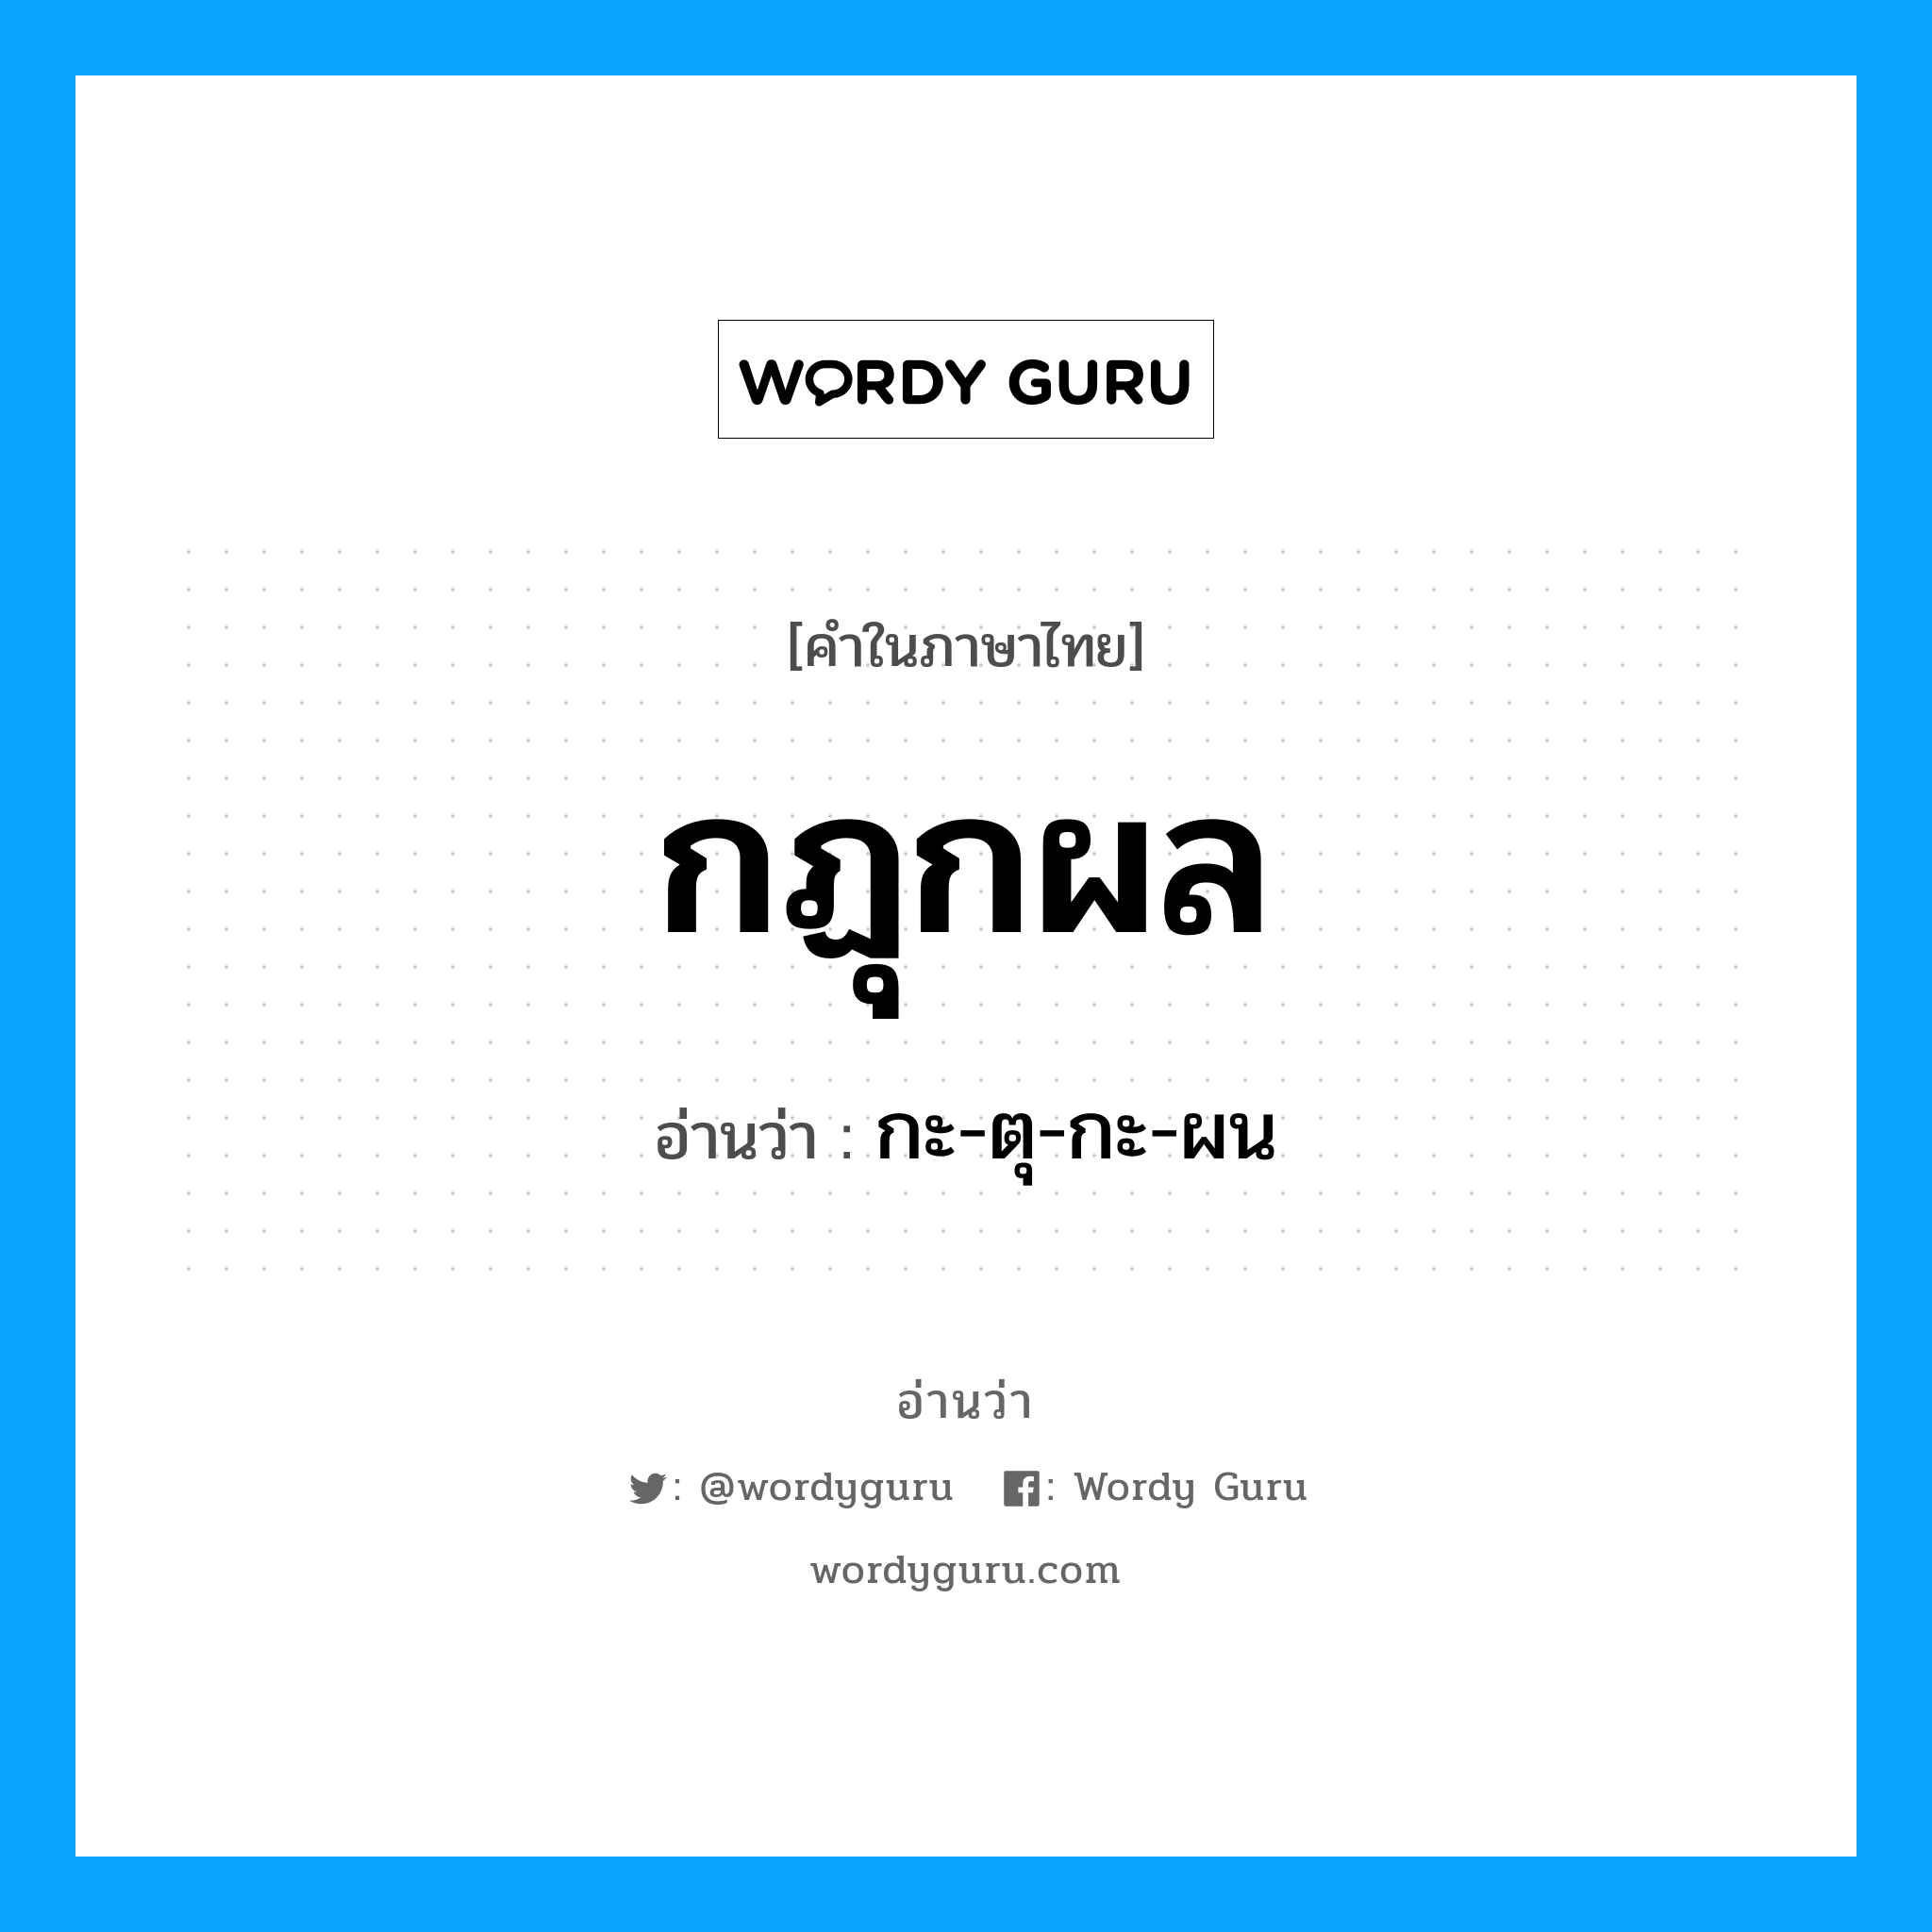 กะ-ตุ-กะ-ผน เป็นคำอ่านของคำไหน?, คำในภาษาไทย กะ-ตุ-กะ-ผน อ่านว่า กฏุกผล